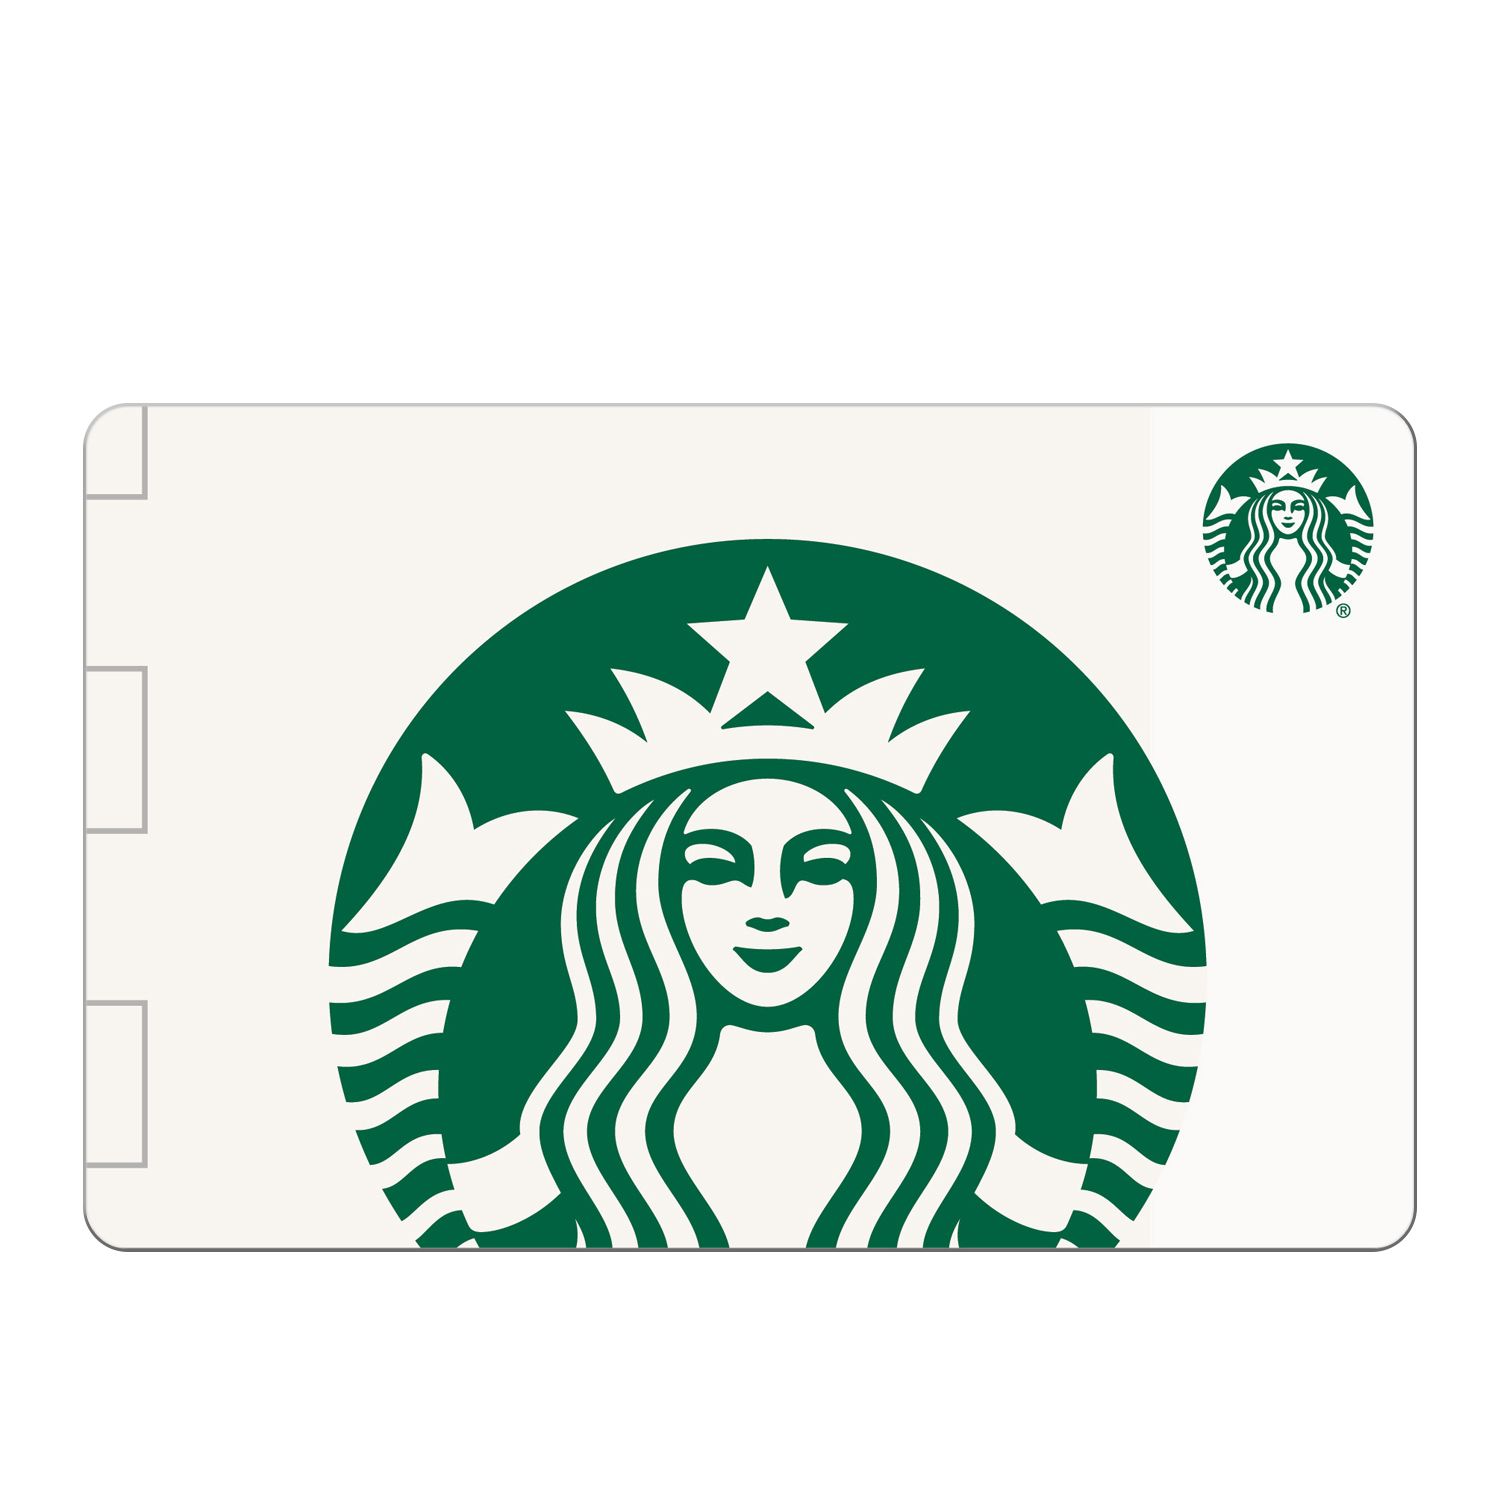  Starbucks $10 Gift Cards (4-Pack) : Gift Cards